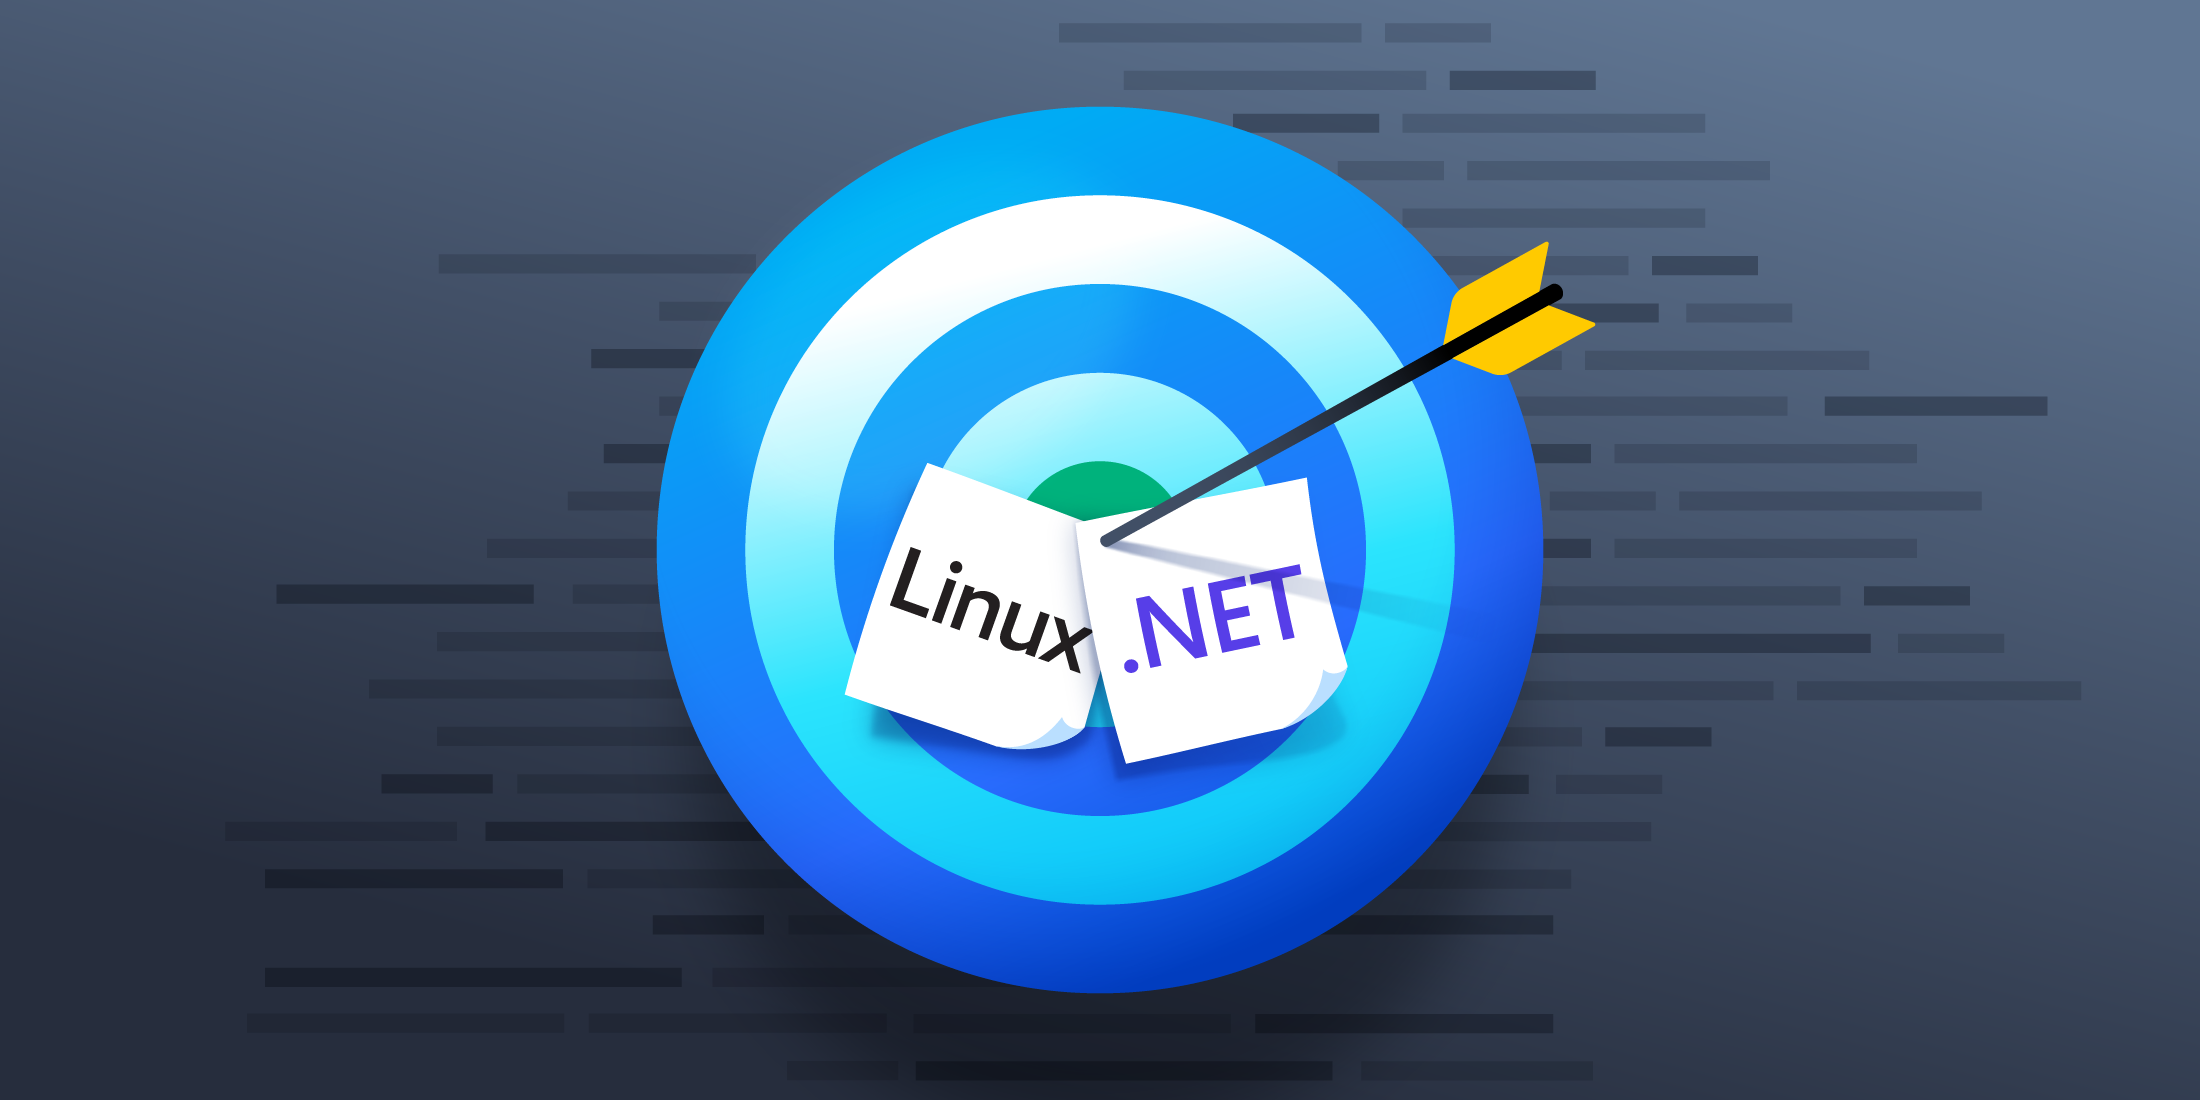 .. 网在Linux上:比看起来简单